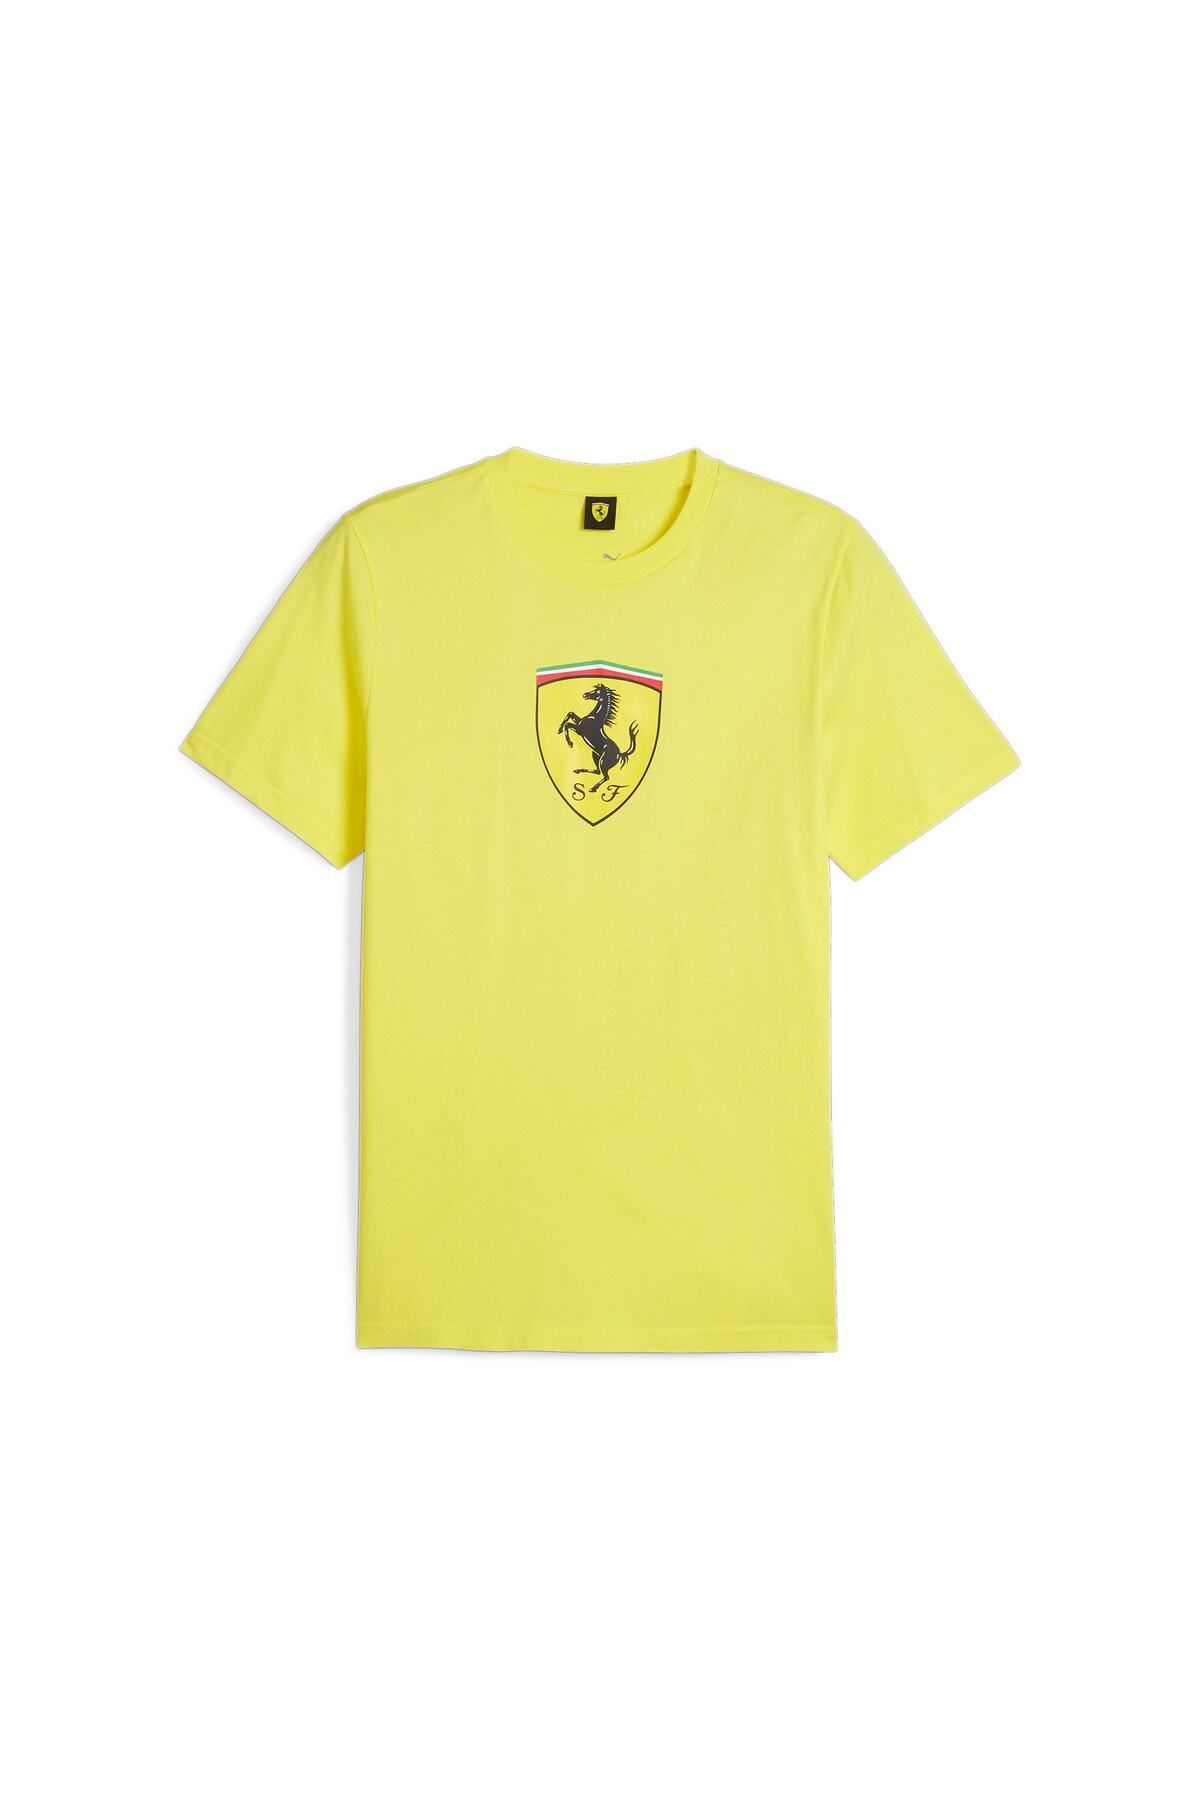 Puma Scuderia Ferrari Race Erkek T-shirt